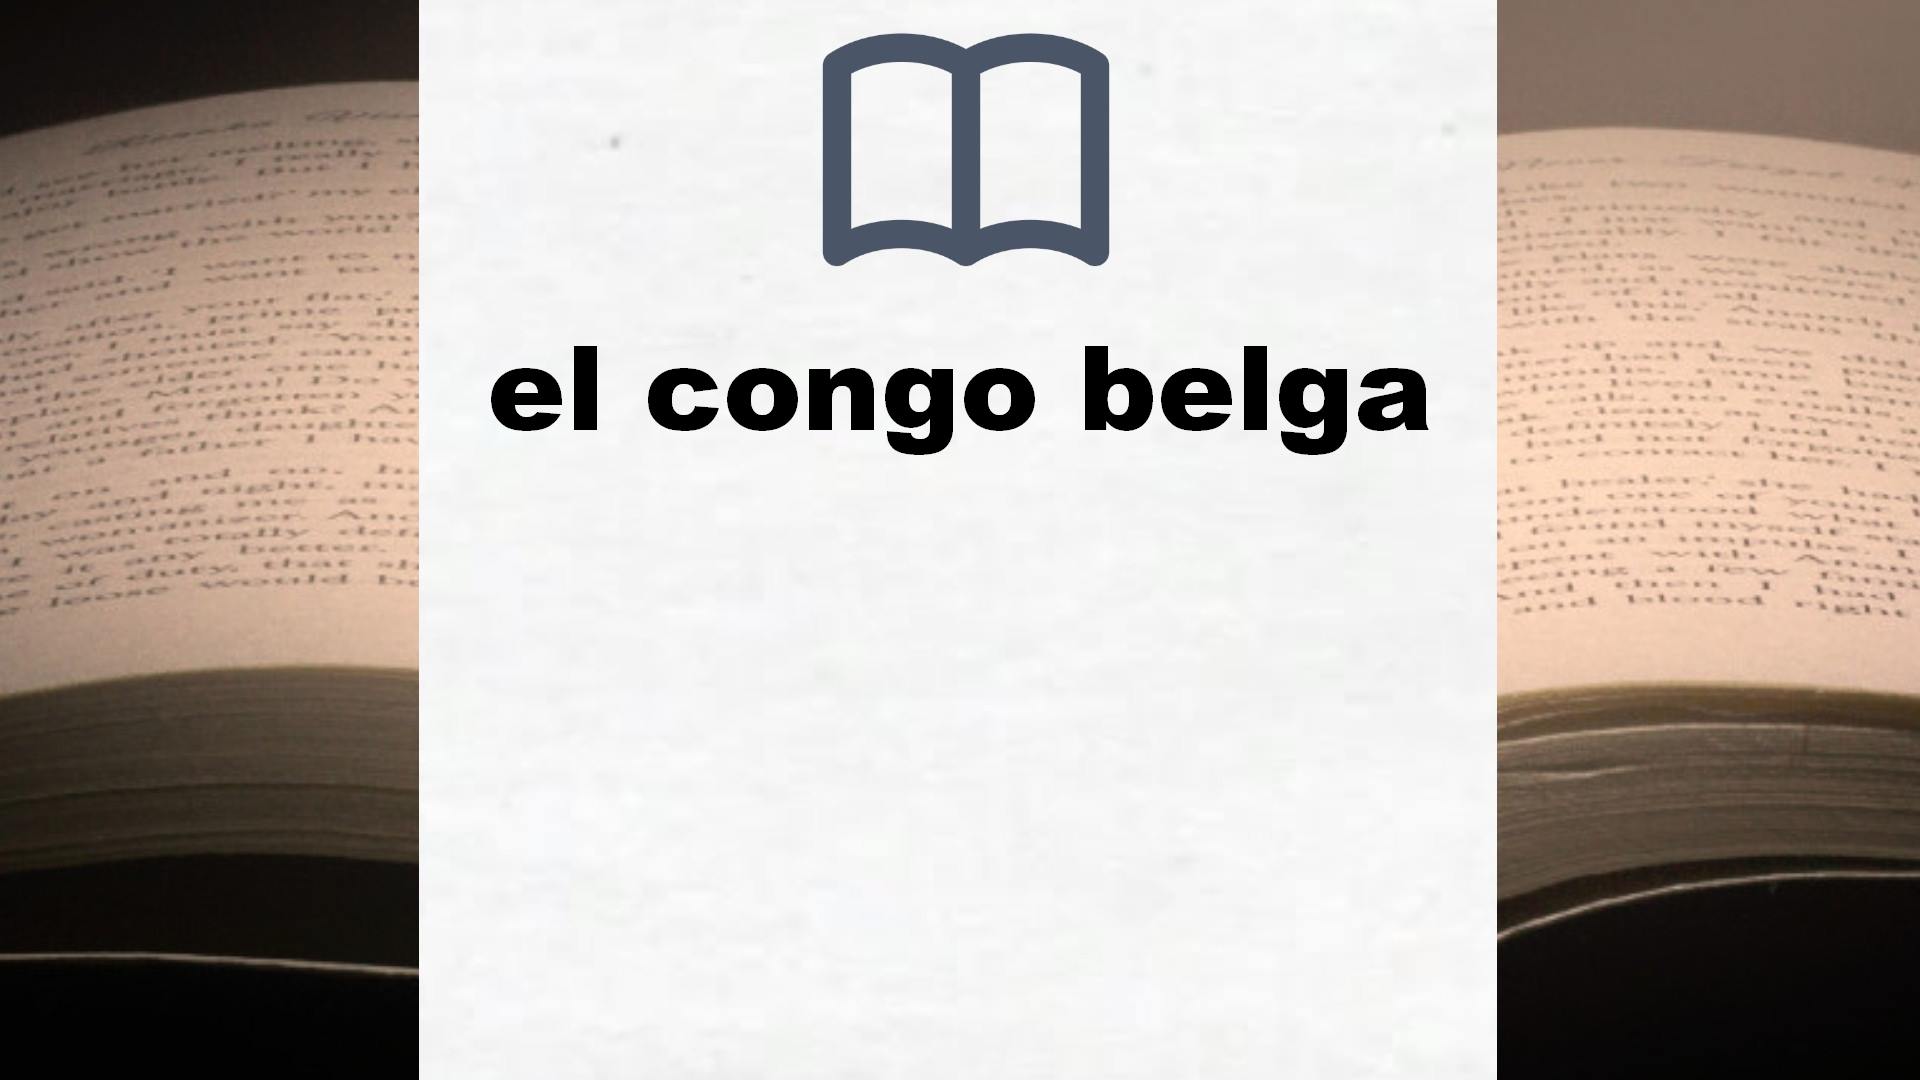 Libros sobre el congo belga